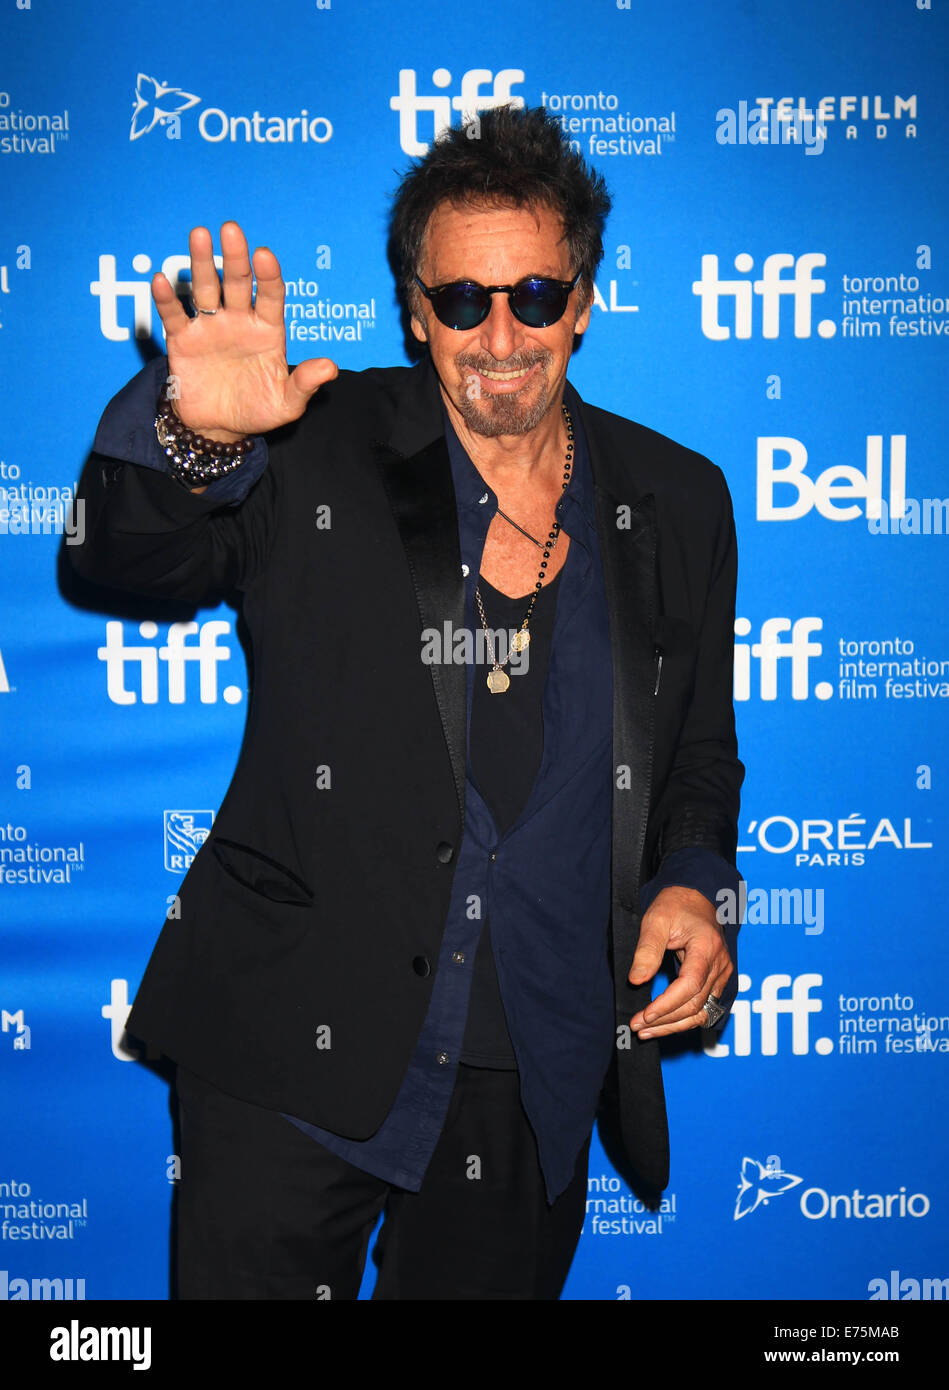 Toronto, Canada. Sep 7, 2014. Al Pacino acteur pose pour des photos lors de la conférence de presse du film 'Manglehorn' lors de la 39e Festival International du Film de Toronto à Toronto, Canada, le 7 septembre 2014. © Zou Zheng/Xinhua/Alamy Live News Banque D'Images